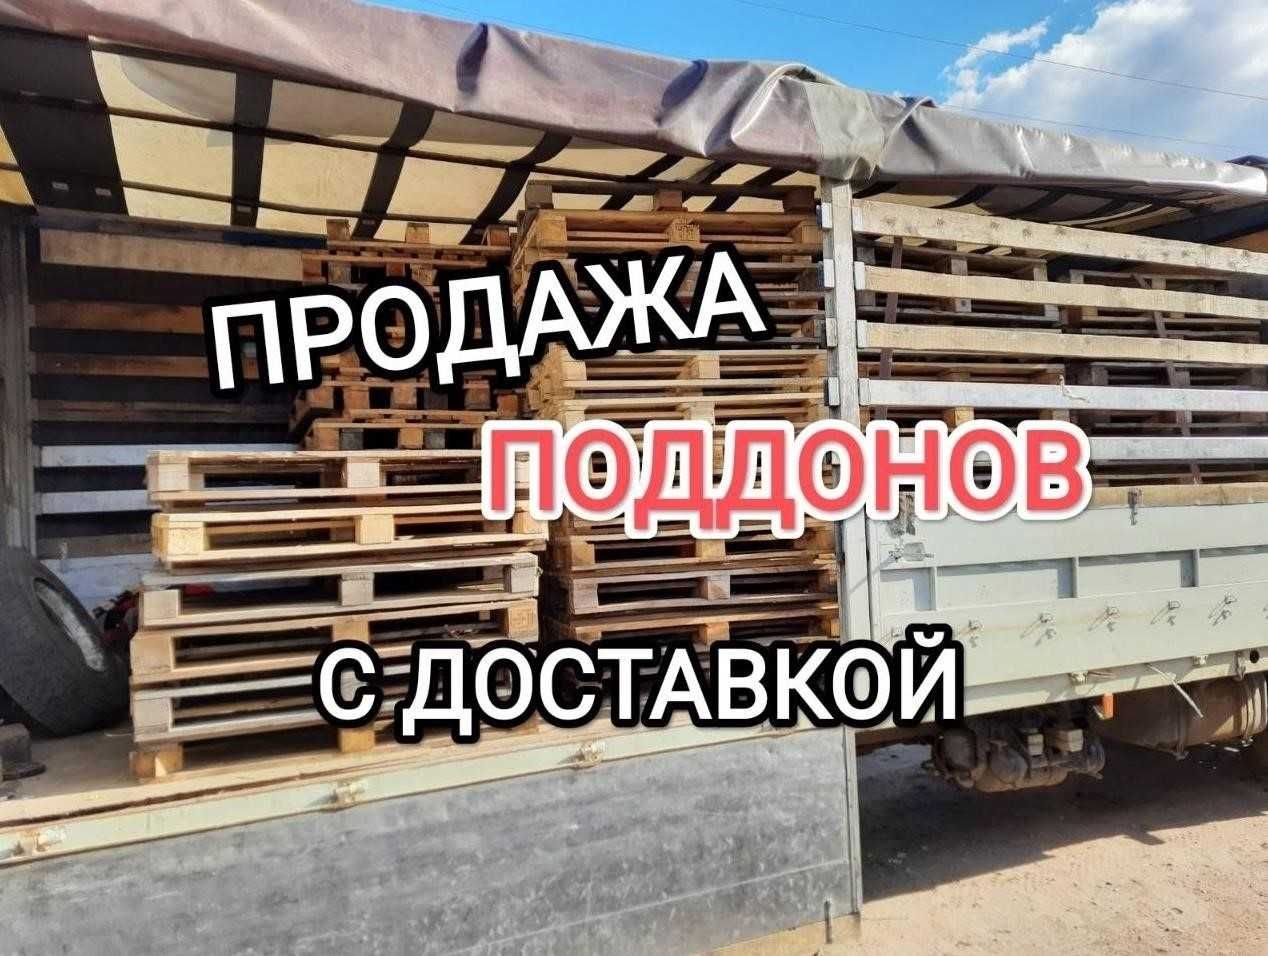 Продажа деревянных поддонов, европаллеты б/у 1200х800